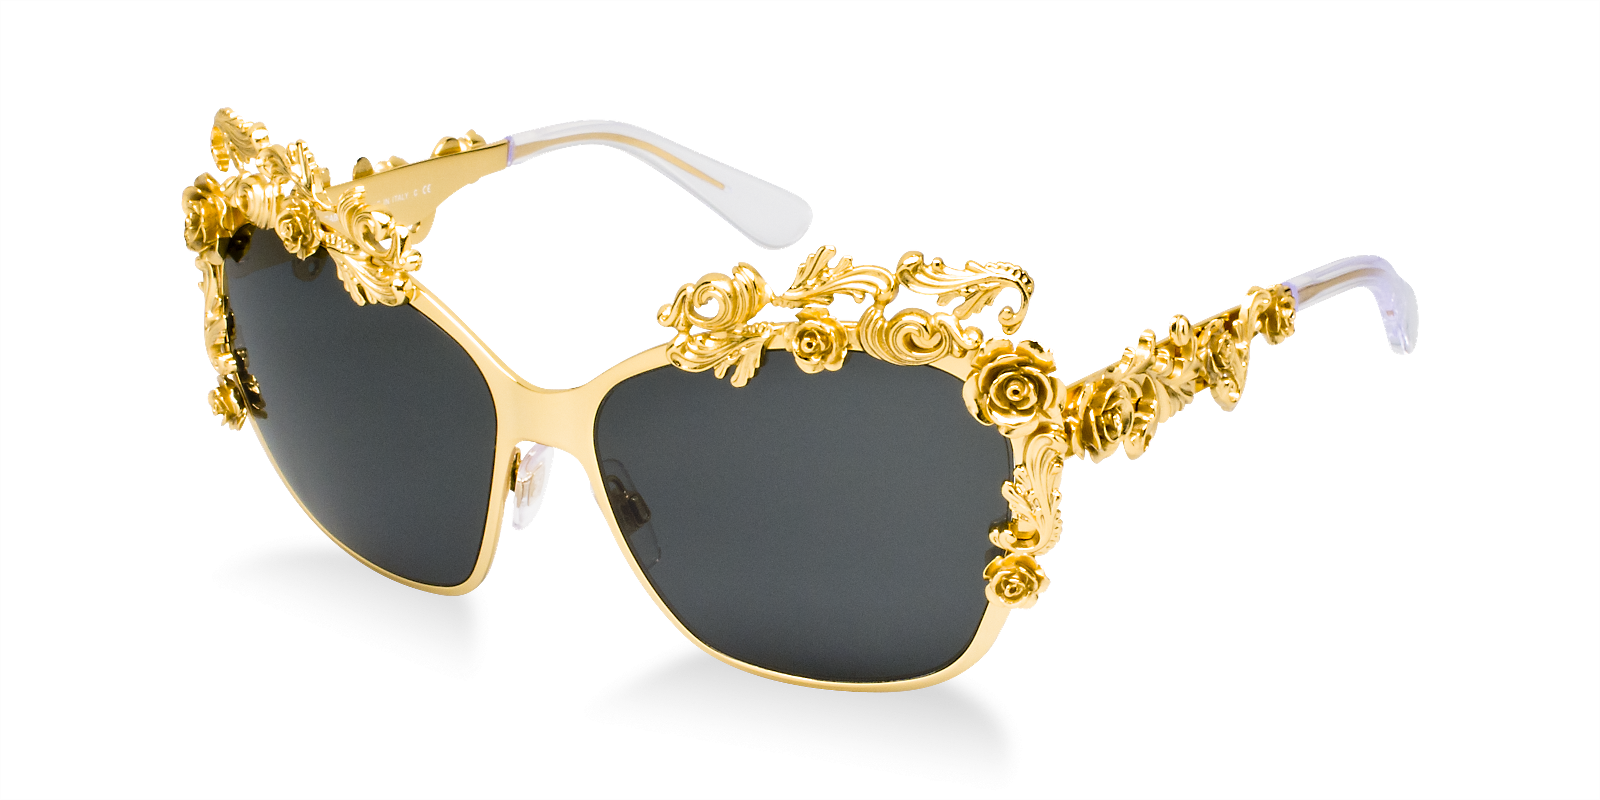 Солнцезащитные очки Дольче Габбана. Очки Dolce Gabbana d847. Оправа Золотая Дольче Габбана. Солнечные очки Дольче Габбана. Очки доминирования